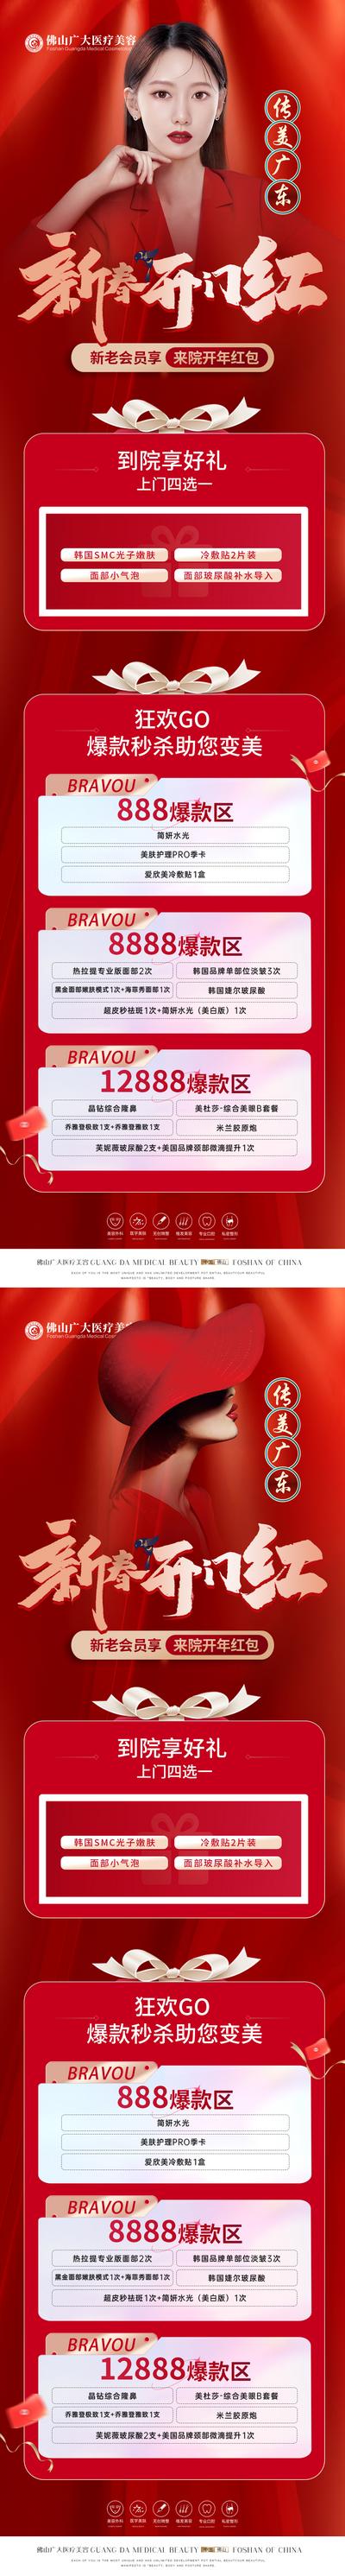 南门网 海报 长图 医美 整形 美容 开门红 新春 卡项 促销 人物